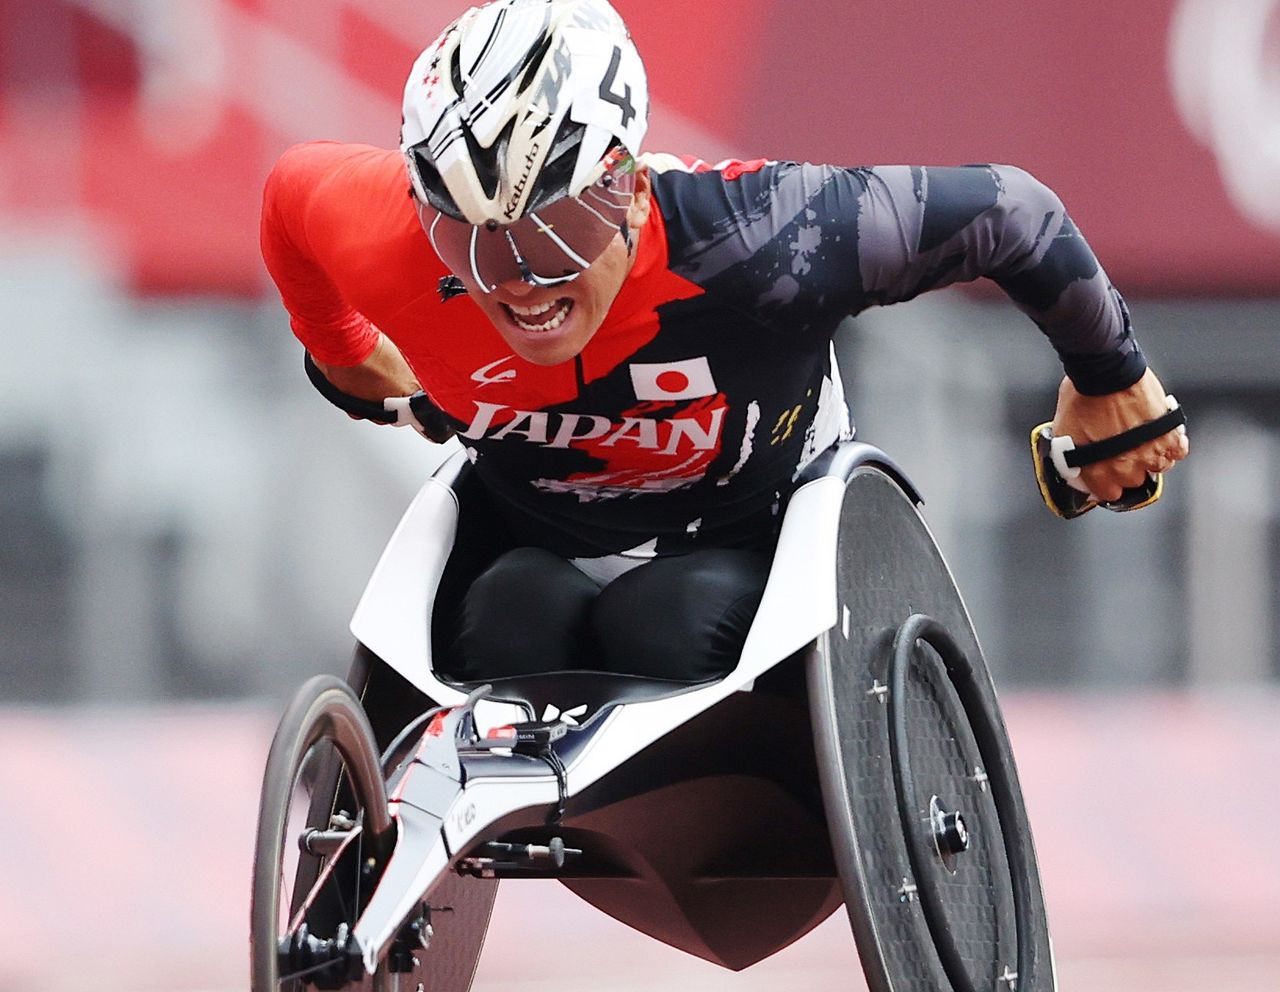 Itō Tomoya는 2021년 8월 29일 일본 국립 경기장에서 휠체어를 타고 T53 클래스에서 경쟁하고 있습니다.  평소 수업에서 그의 시간은 동메달 최종 기록보다 빨랐습니다.  (© 지지)